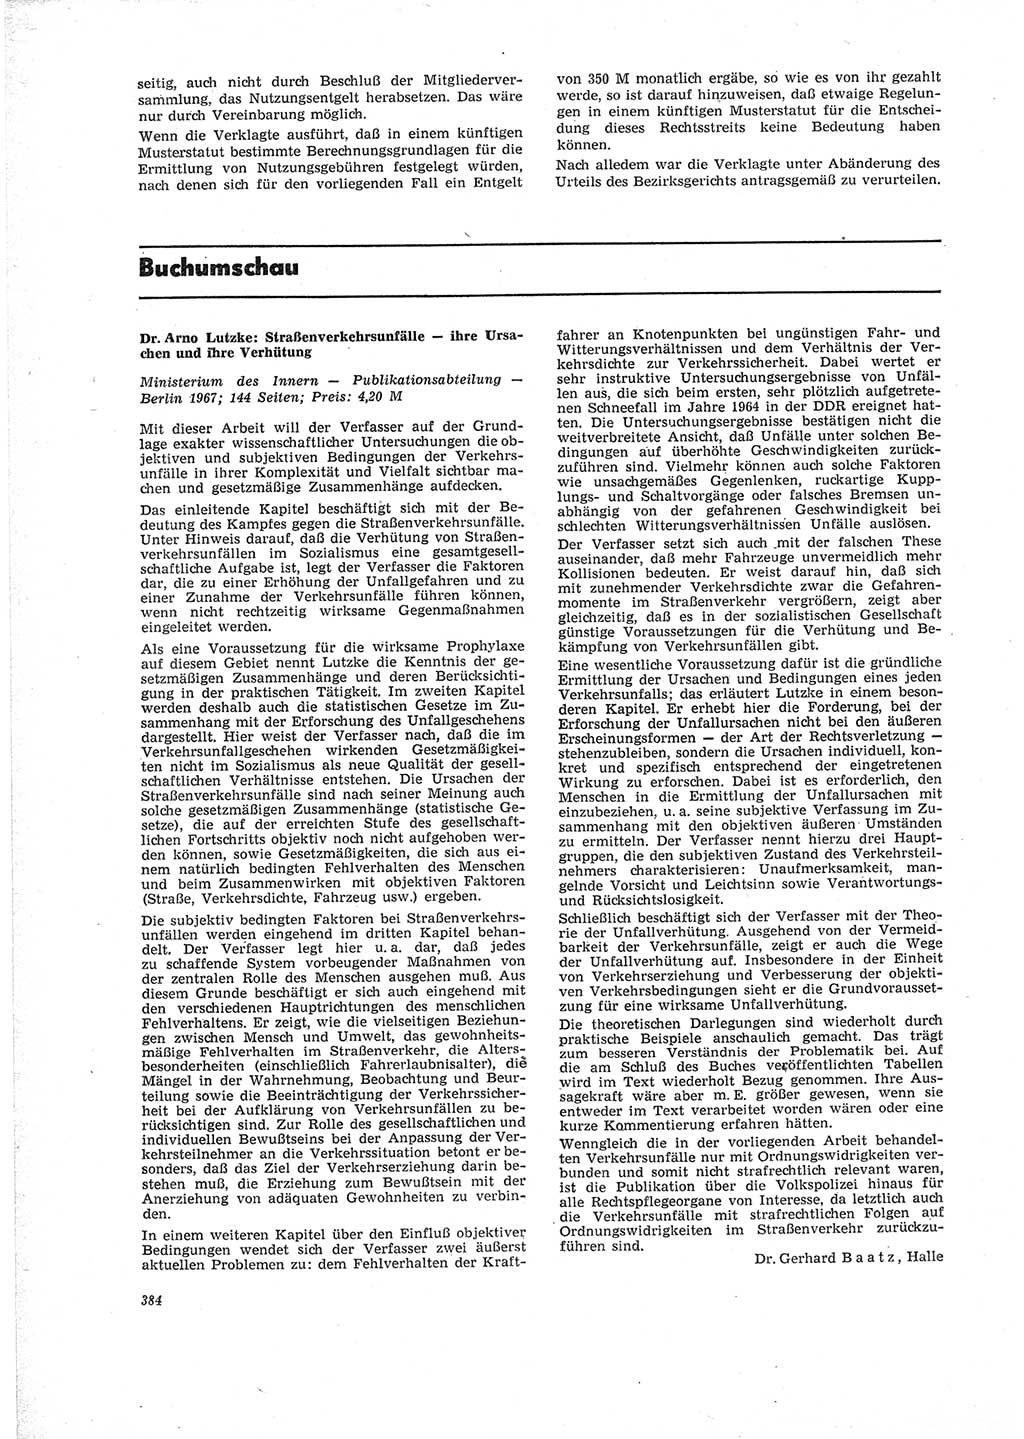 Neue Justiz (NJ), Zeitschrift für Recht und Rechtswissenschaft [Deutsche Demokratische Republik (DDR)], 23. Jahrgang 1969, Seite 384 (NJ DDR 1969, S. 384)